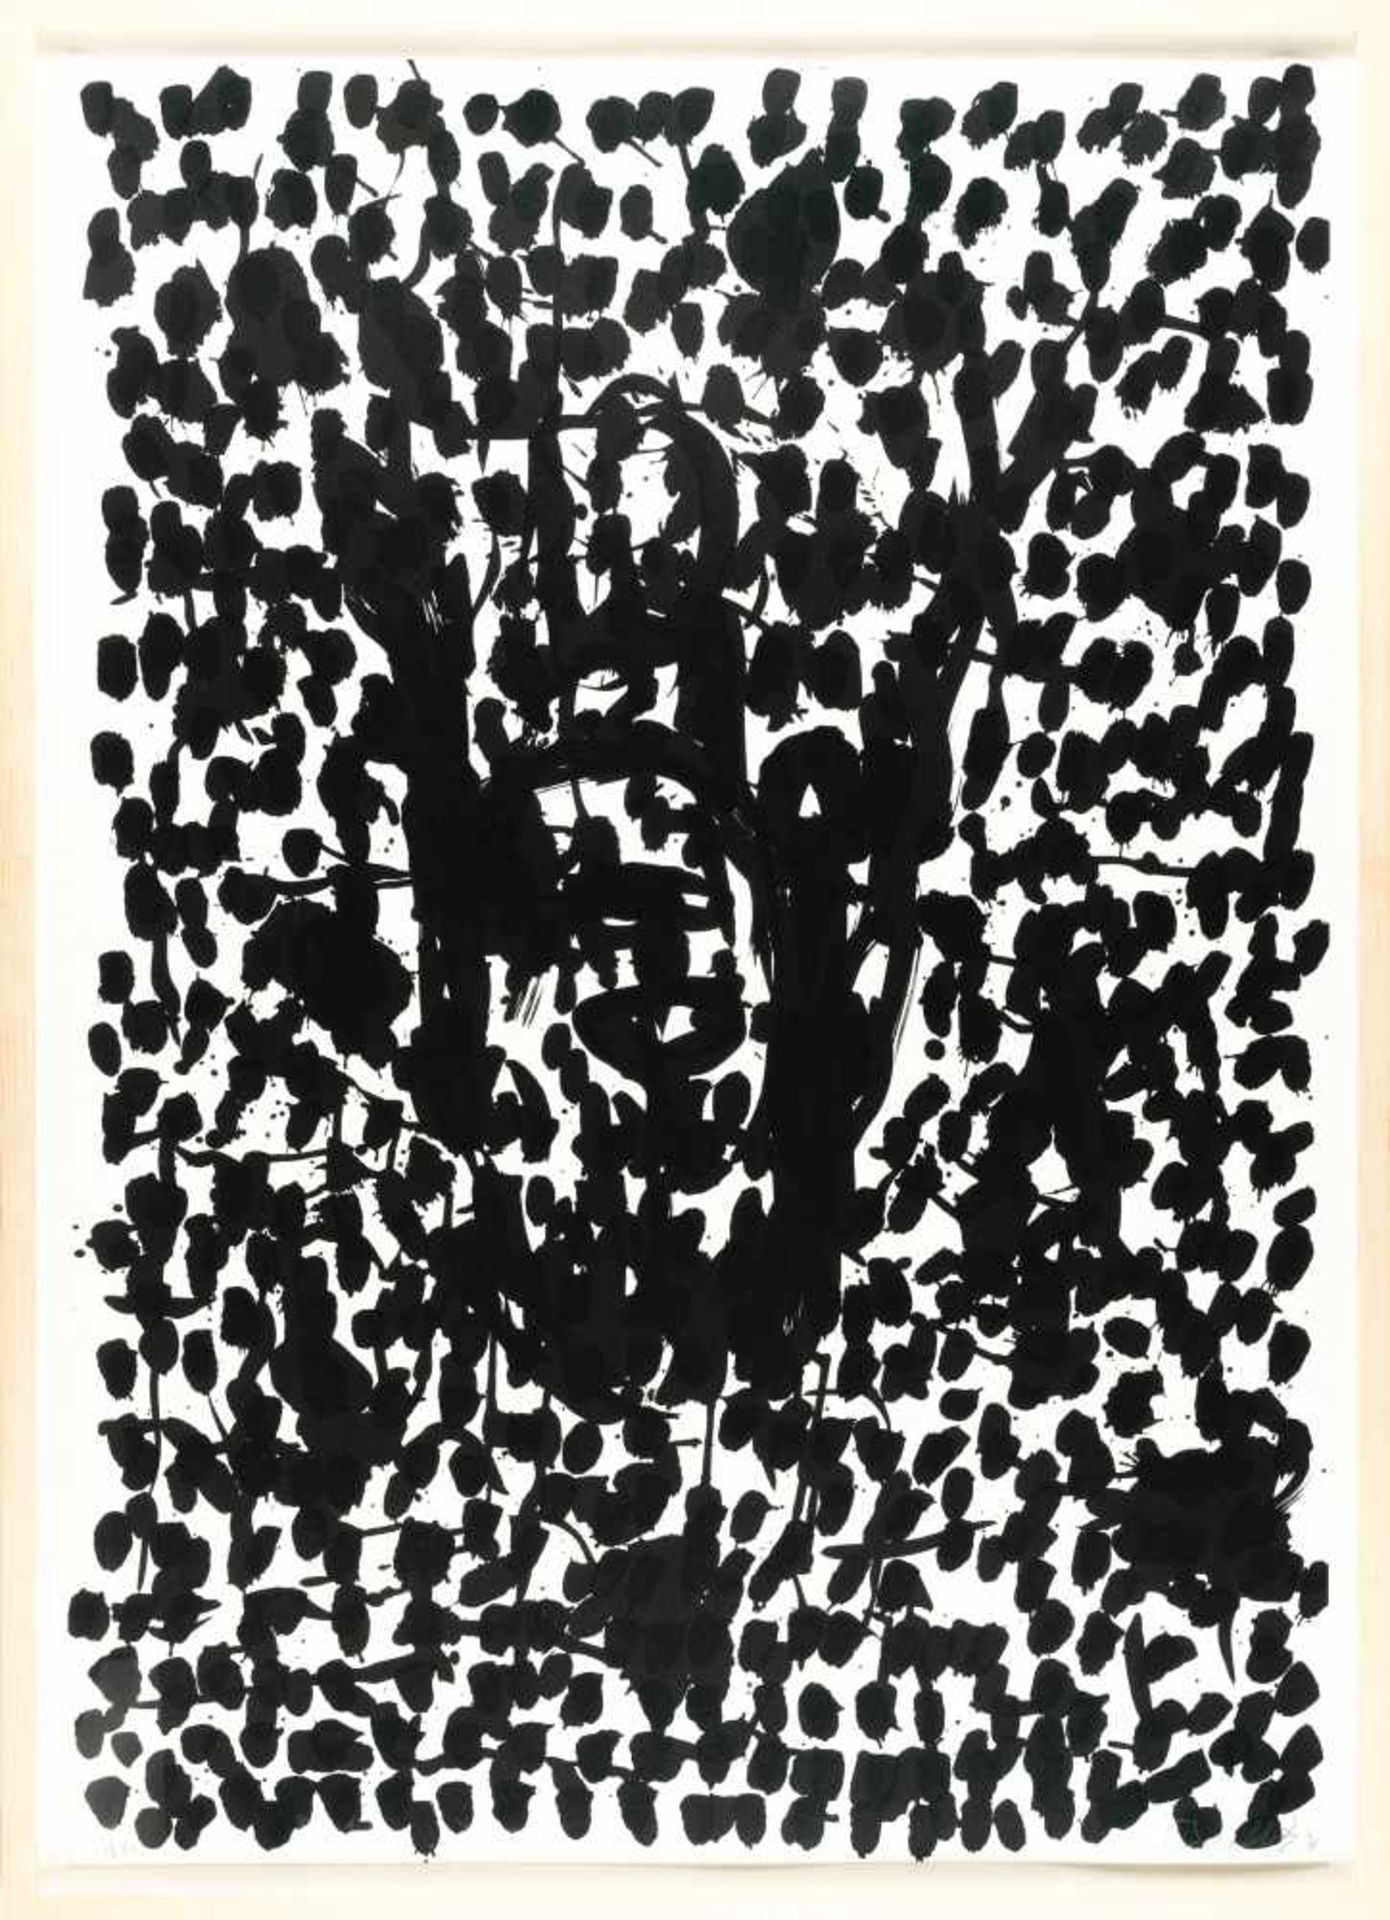 Georg BaselitzSuite 45Mappe mit 21 Offsetlithographien auf Karton. (19)90. Ca. 100 x 70 cm - Bild 9 aus 20